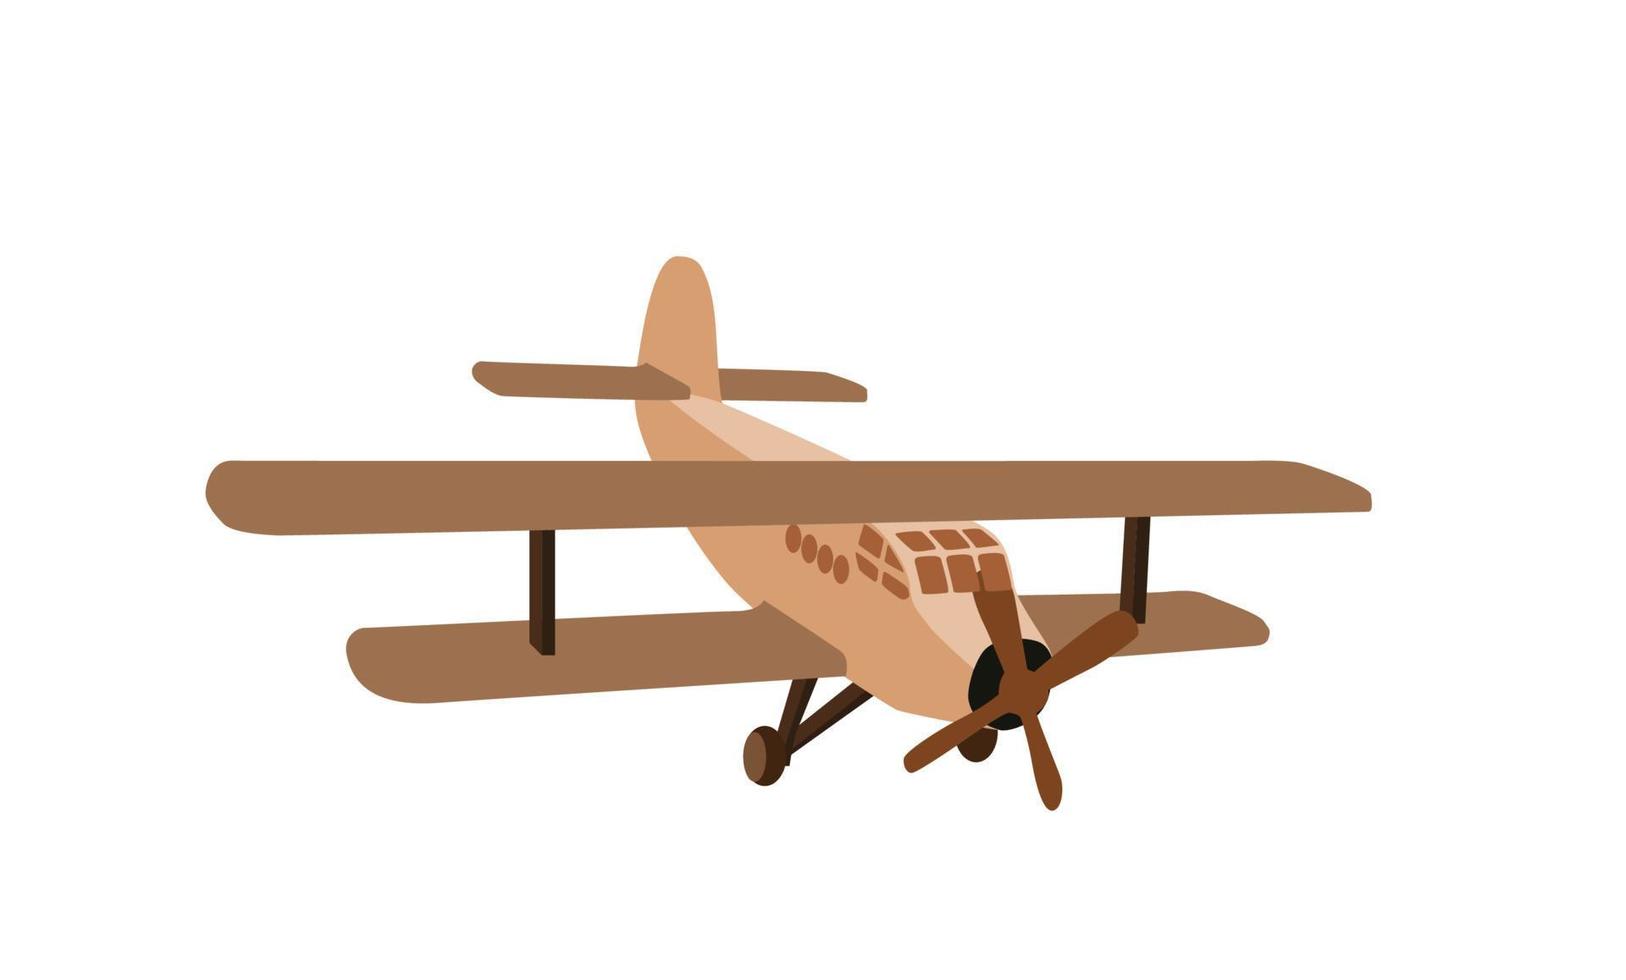 kleurenmodel van een oud vliegtuig. geïsoleerd op een witte achtergrond. vector illustratie